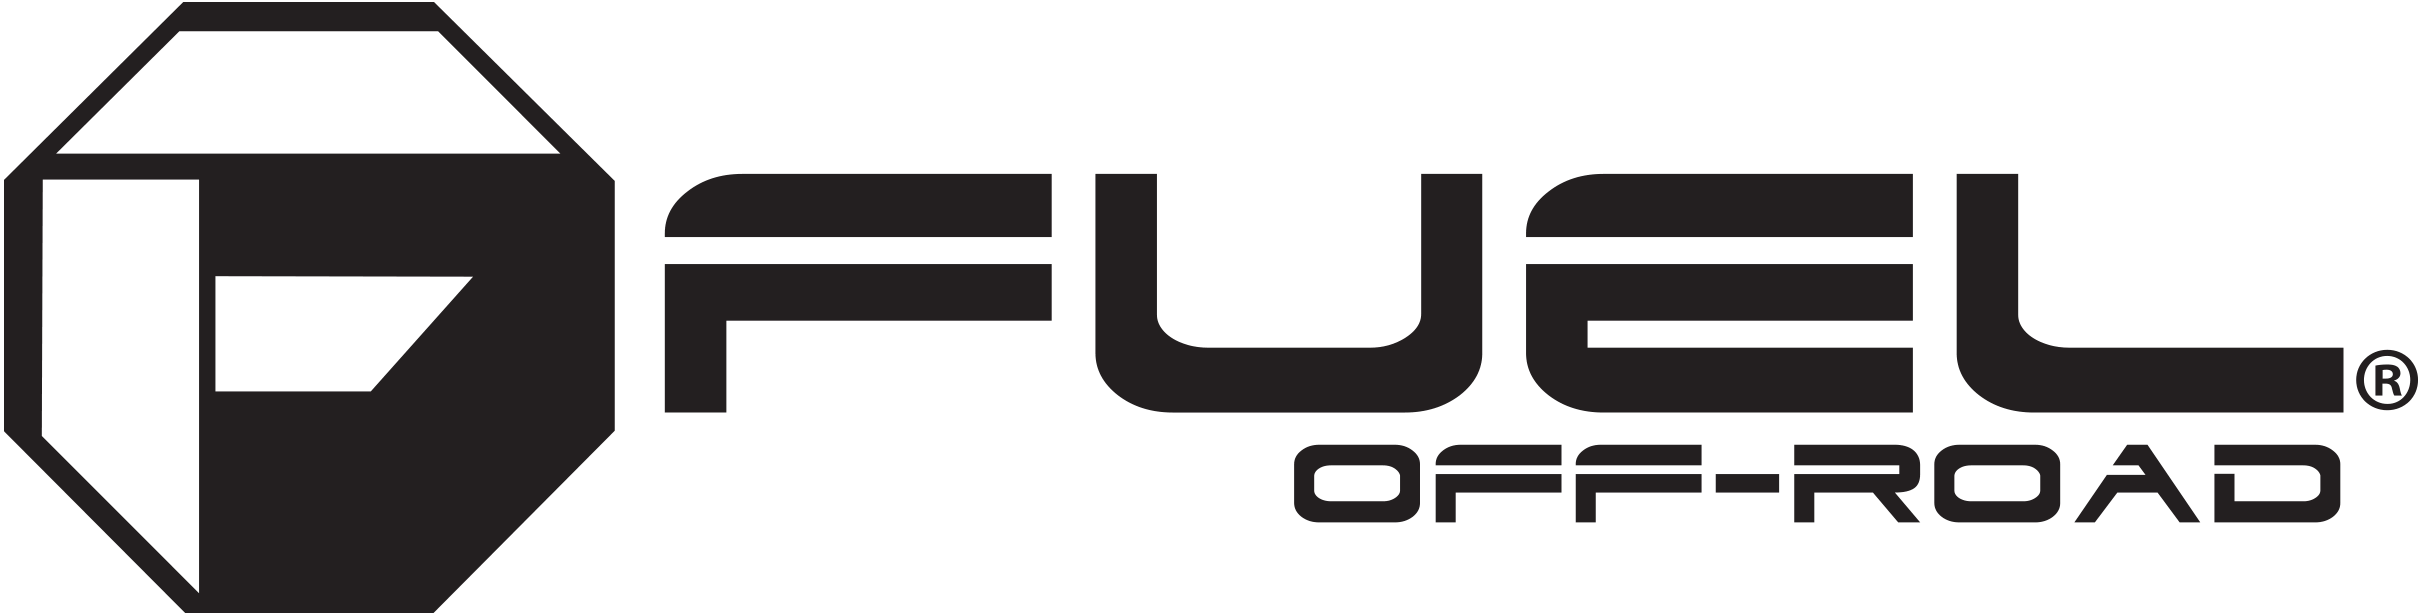 Fuel-Off-Road-Tires-logo-3000x1000 (1)